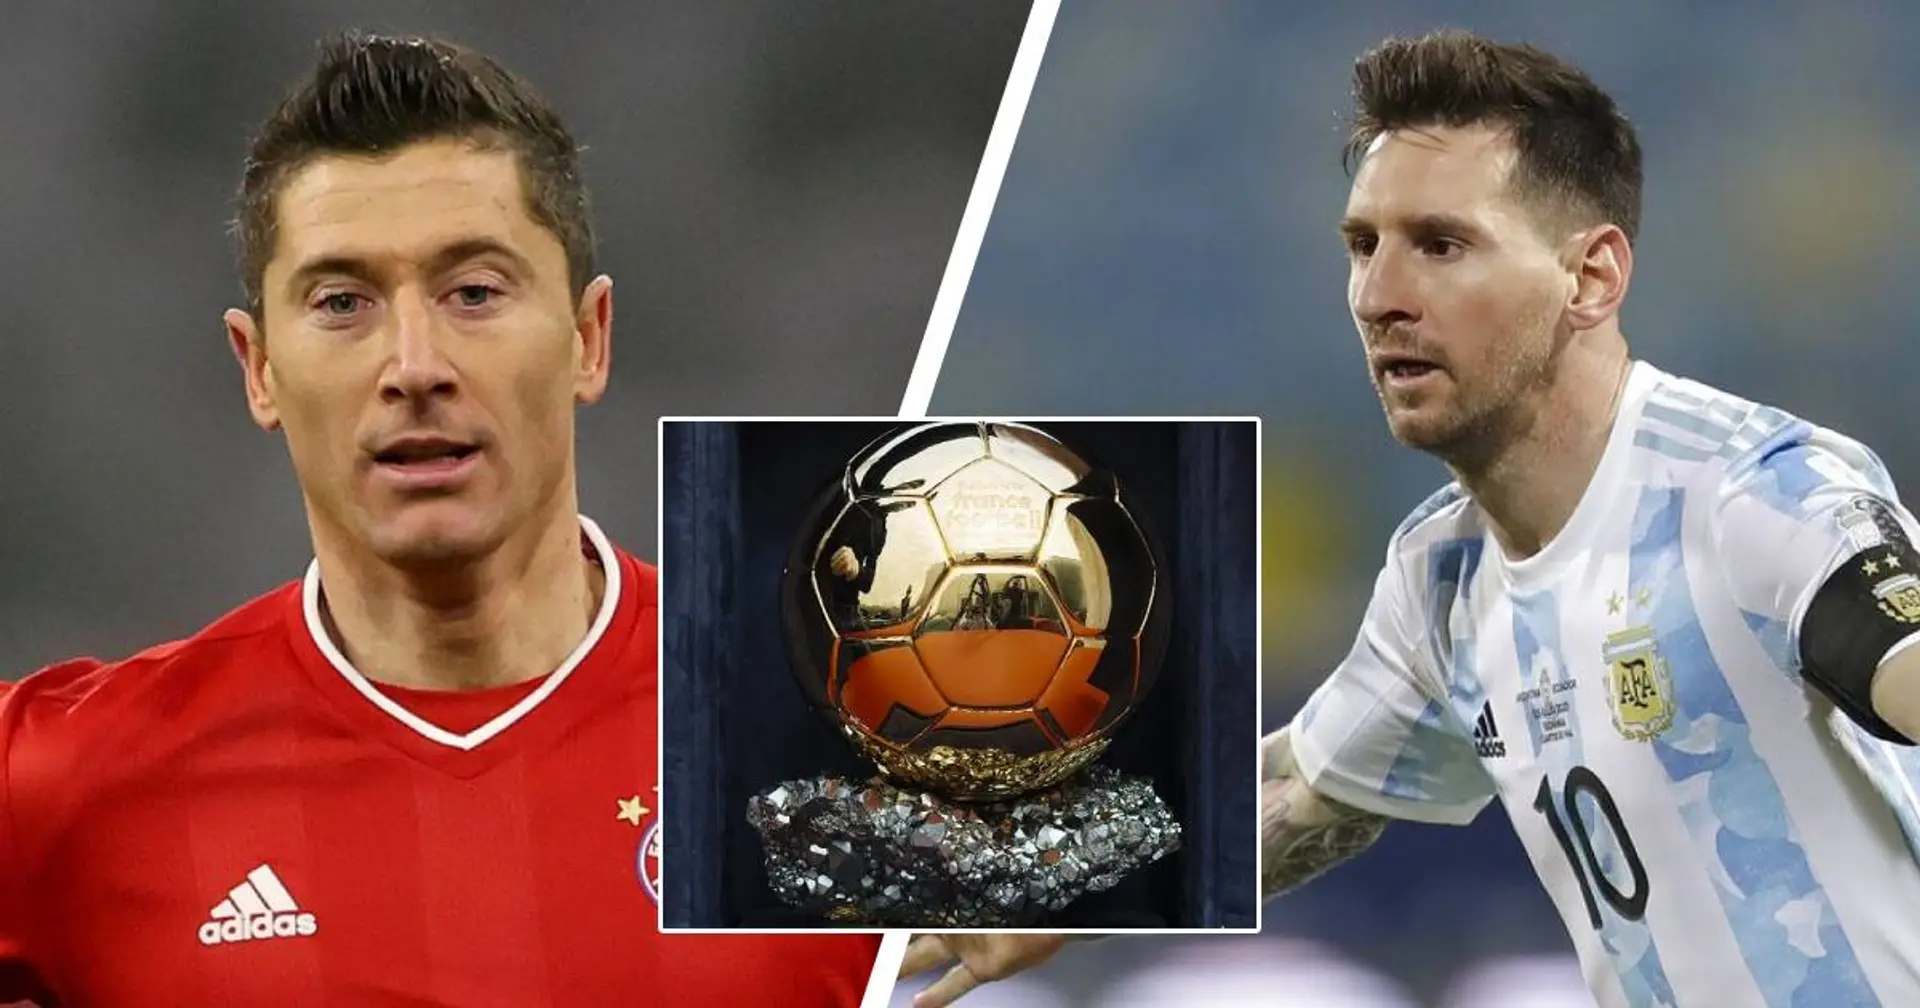 Schlechte Chancen für Lewandowski: Messi gilt als klarer Favorit im Ballon d'Or-Rennen 2021